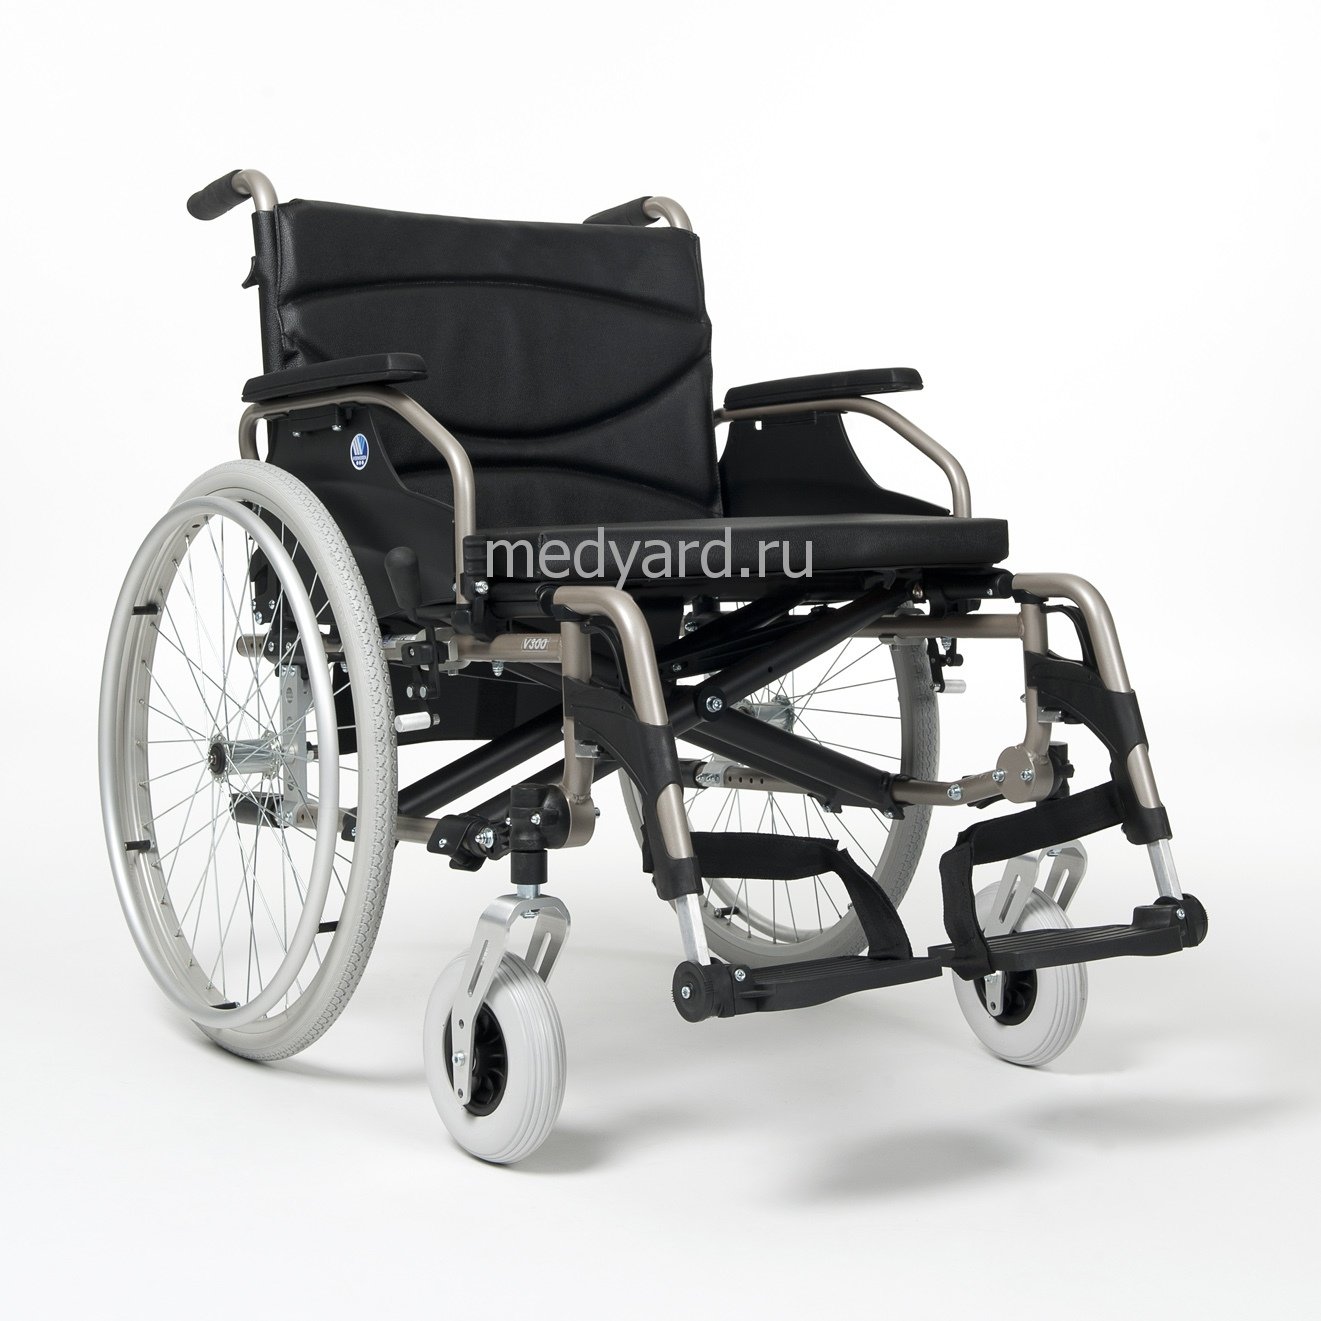 Инвалидное кресло на авито. Инвалидная коляска Vermeiren v300. Vermeiren v300 Comfort. Инвалидная коляска Вермейрен v300 комфорт. Кресло-коляска v300 Сomfort.